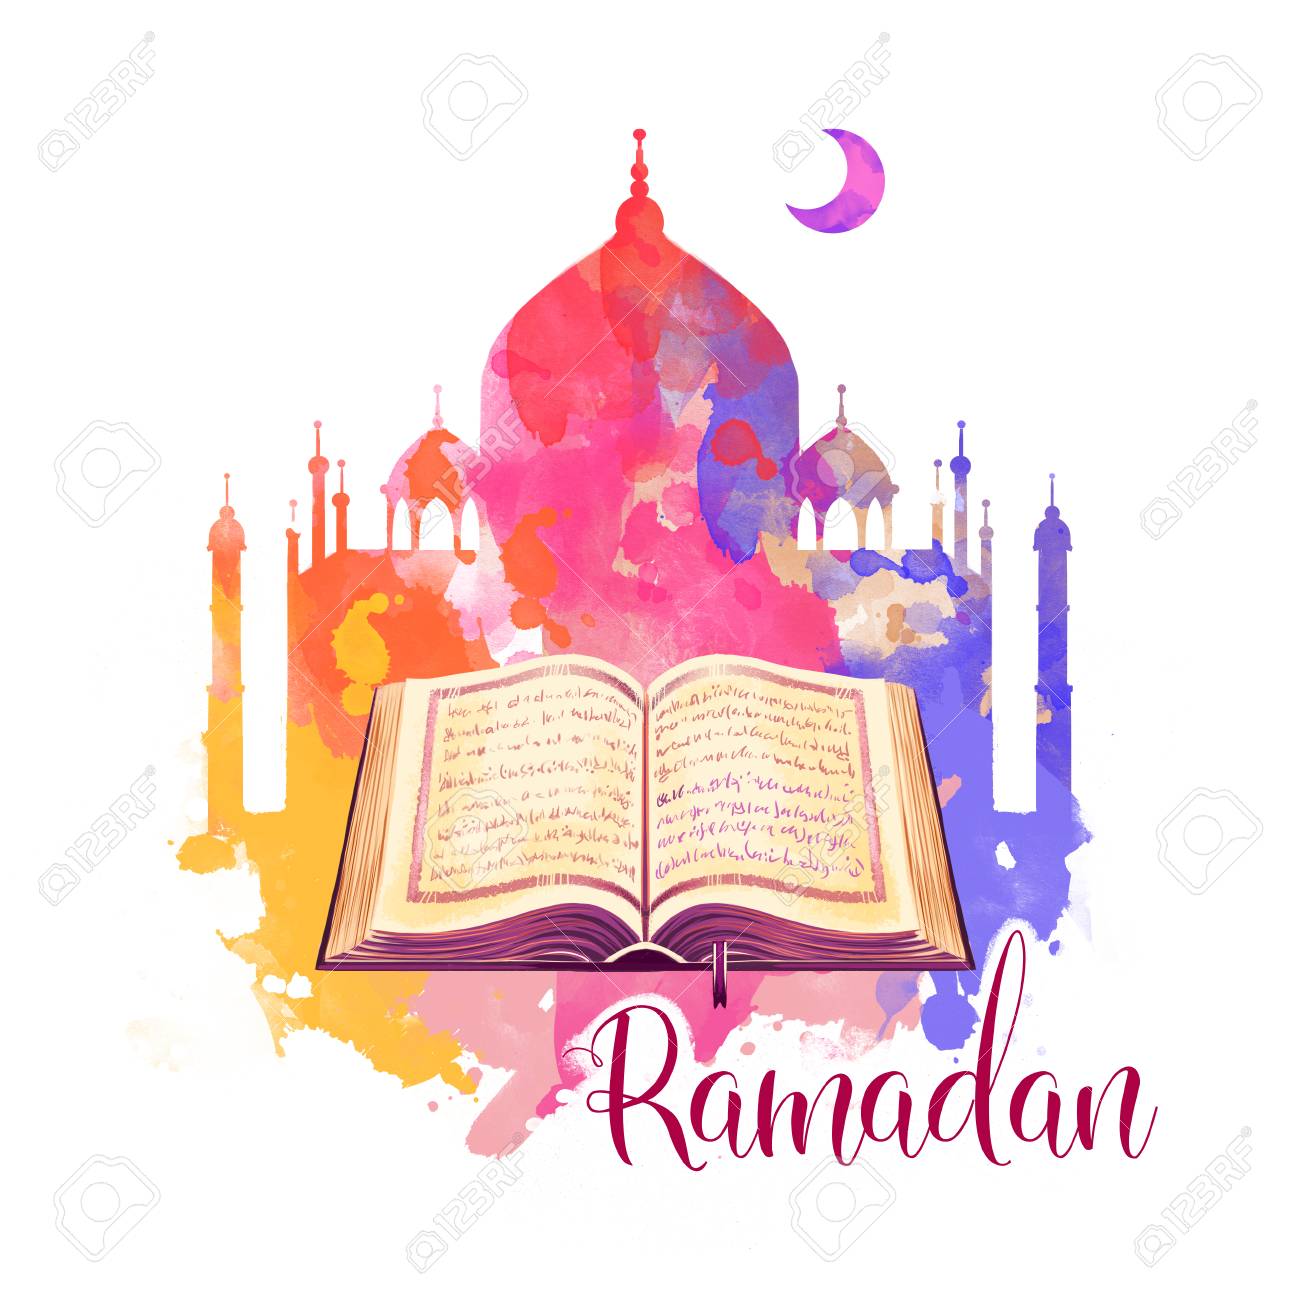 صور رمضان 2021 ramadan kareem